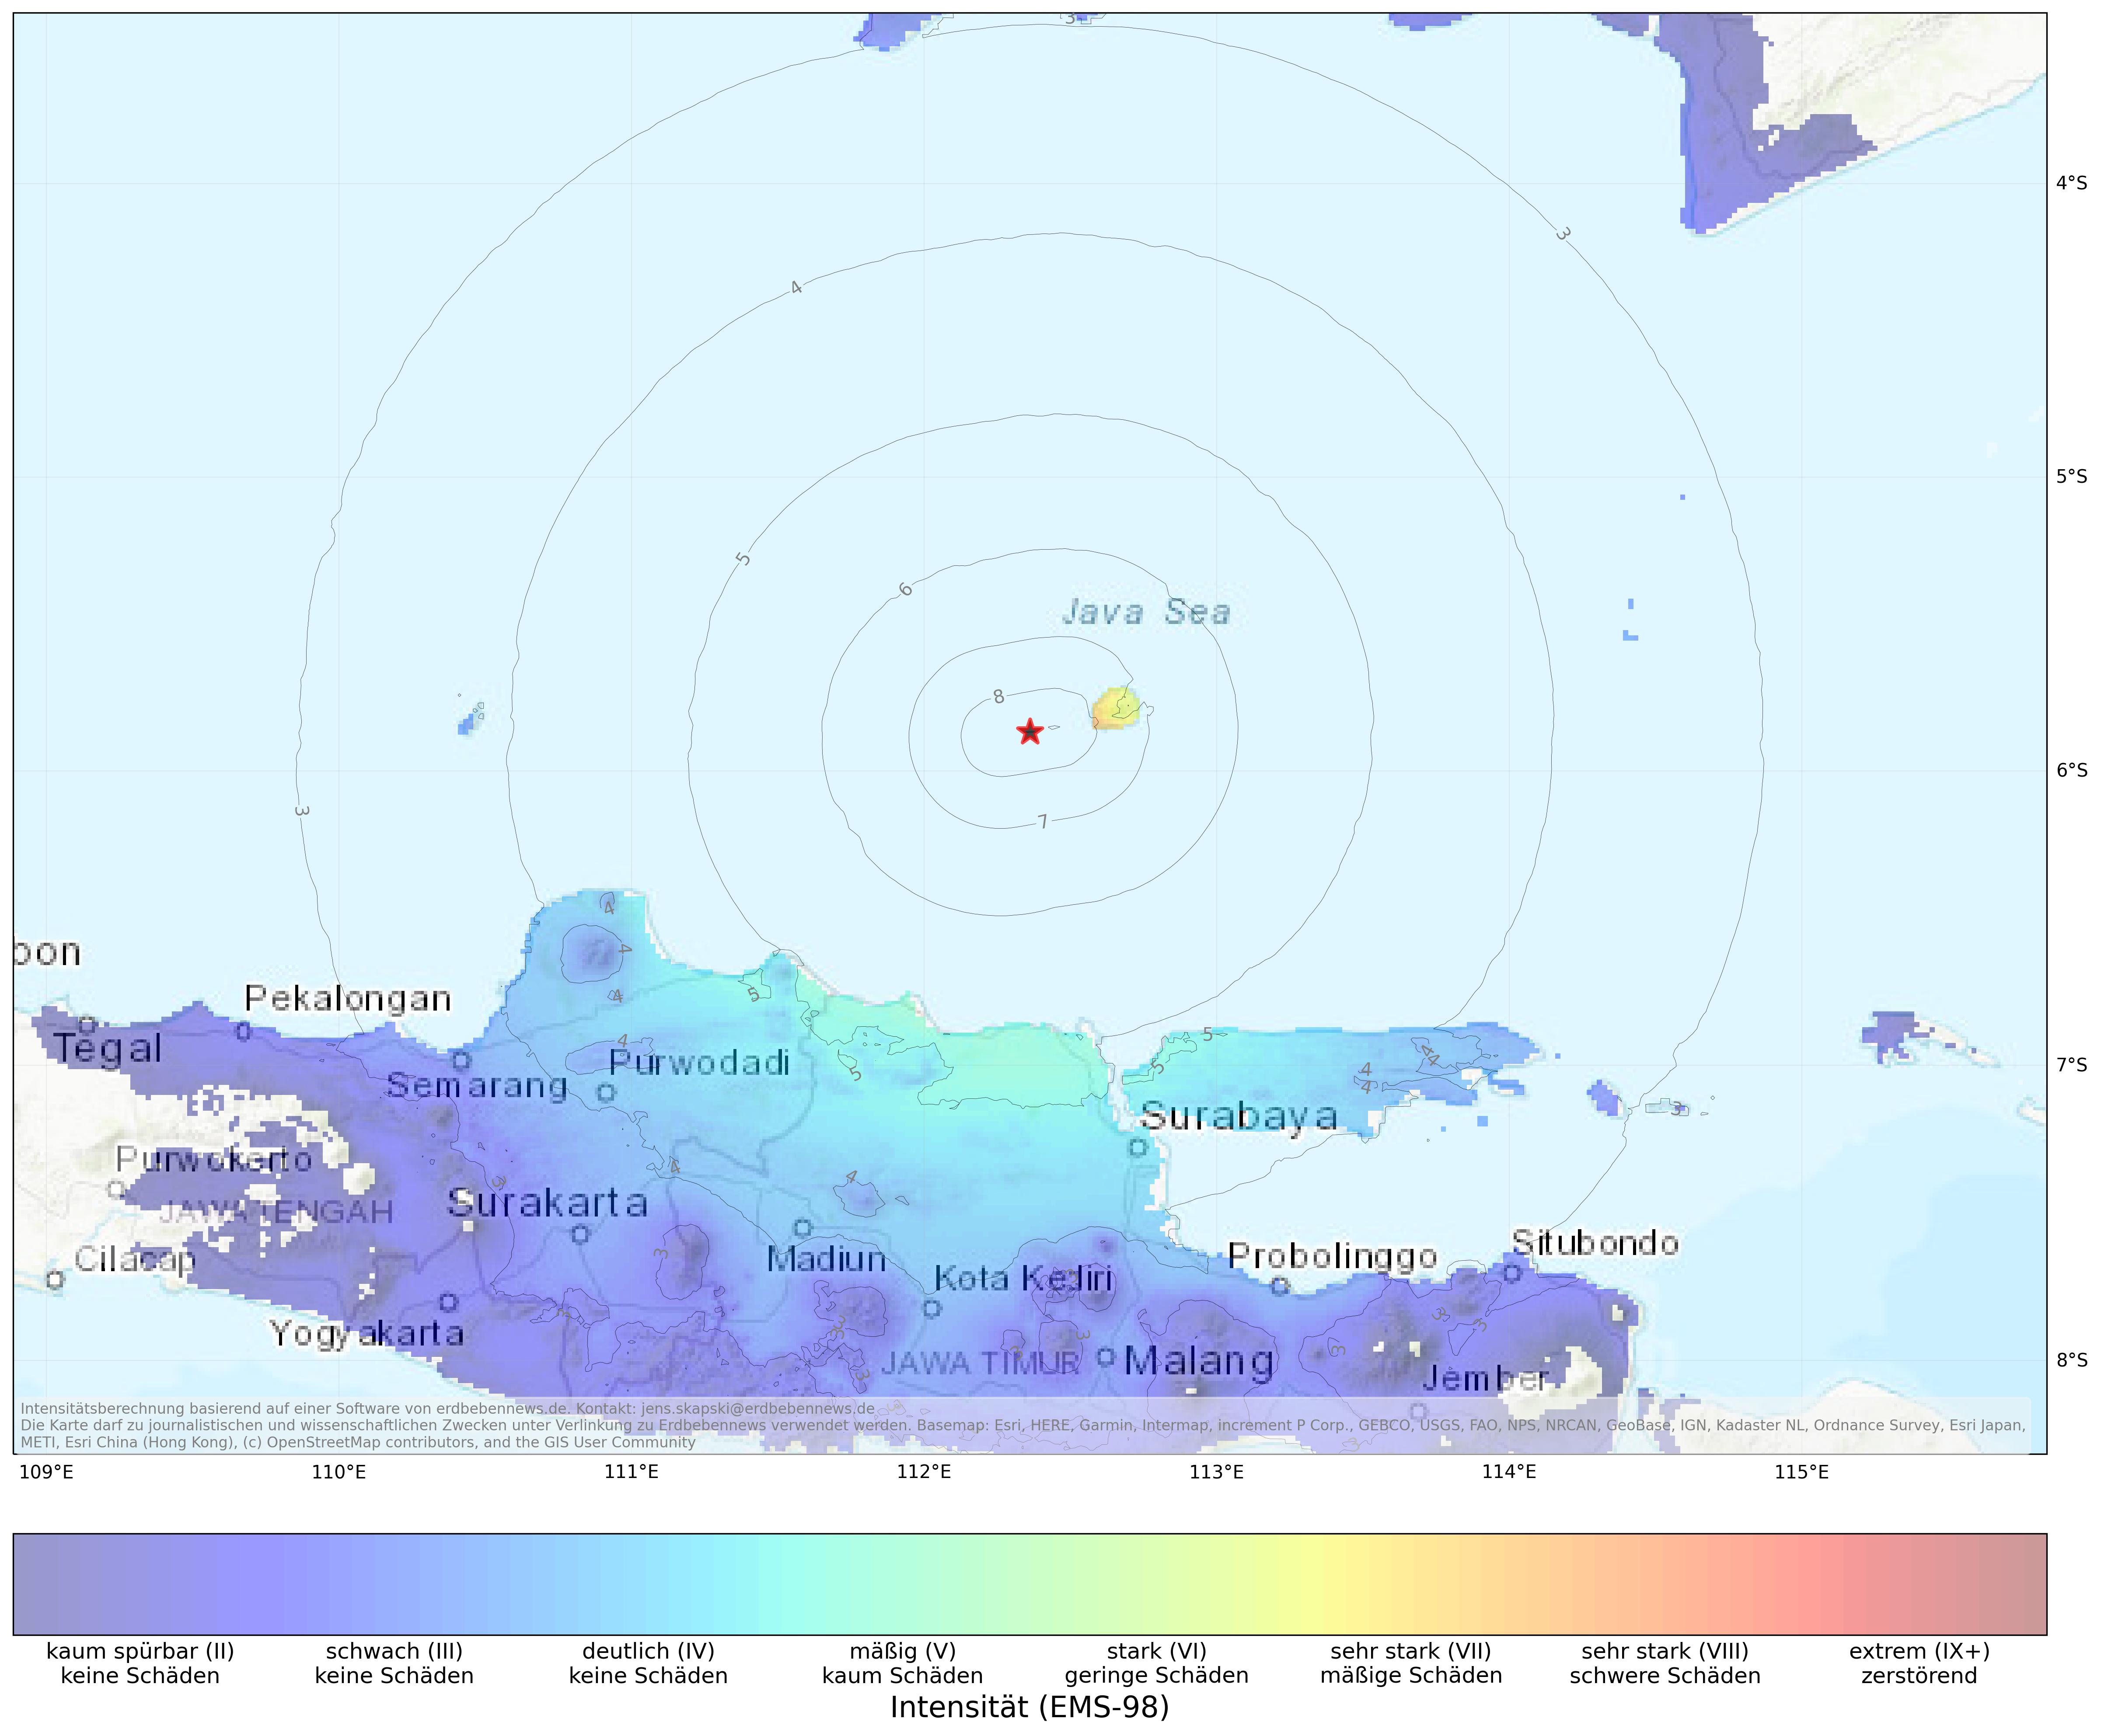 Berechnete Intensität (ShakeMap) des Erdbebens der Stärke 6.4 am 22. März, 9:52 Uhr in Indonesien